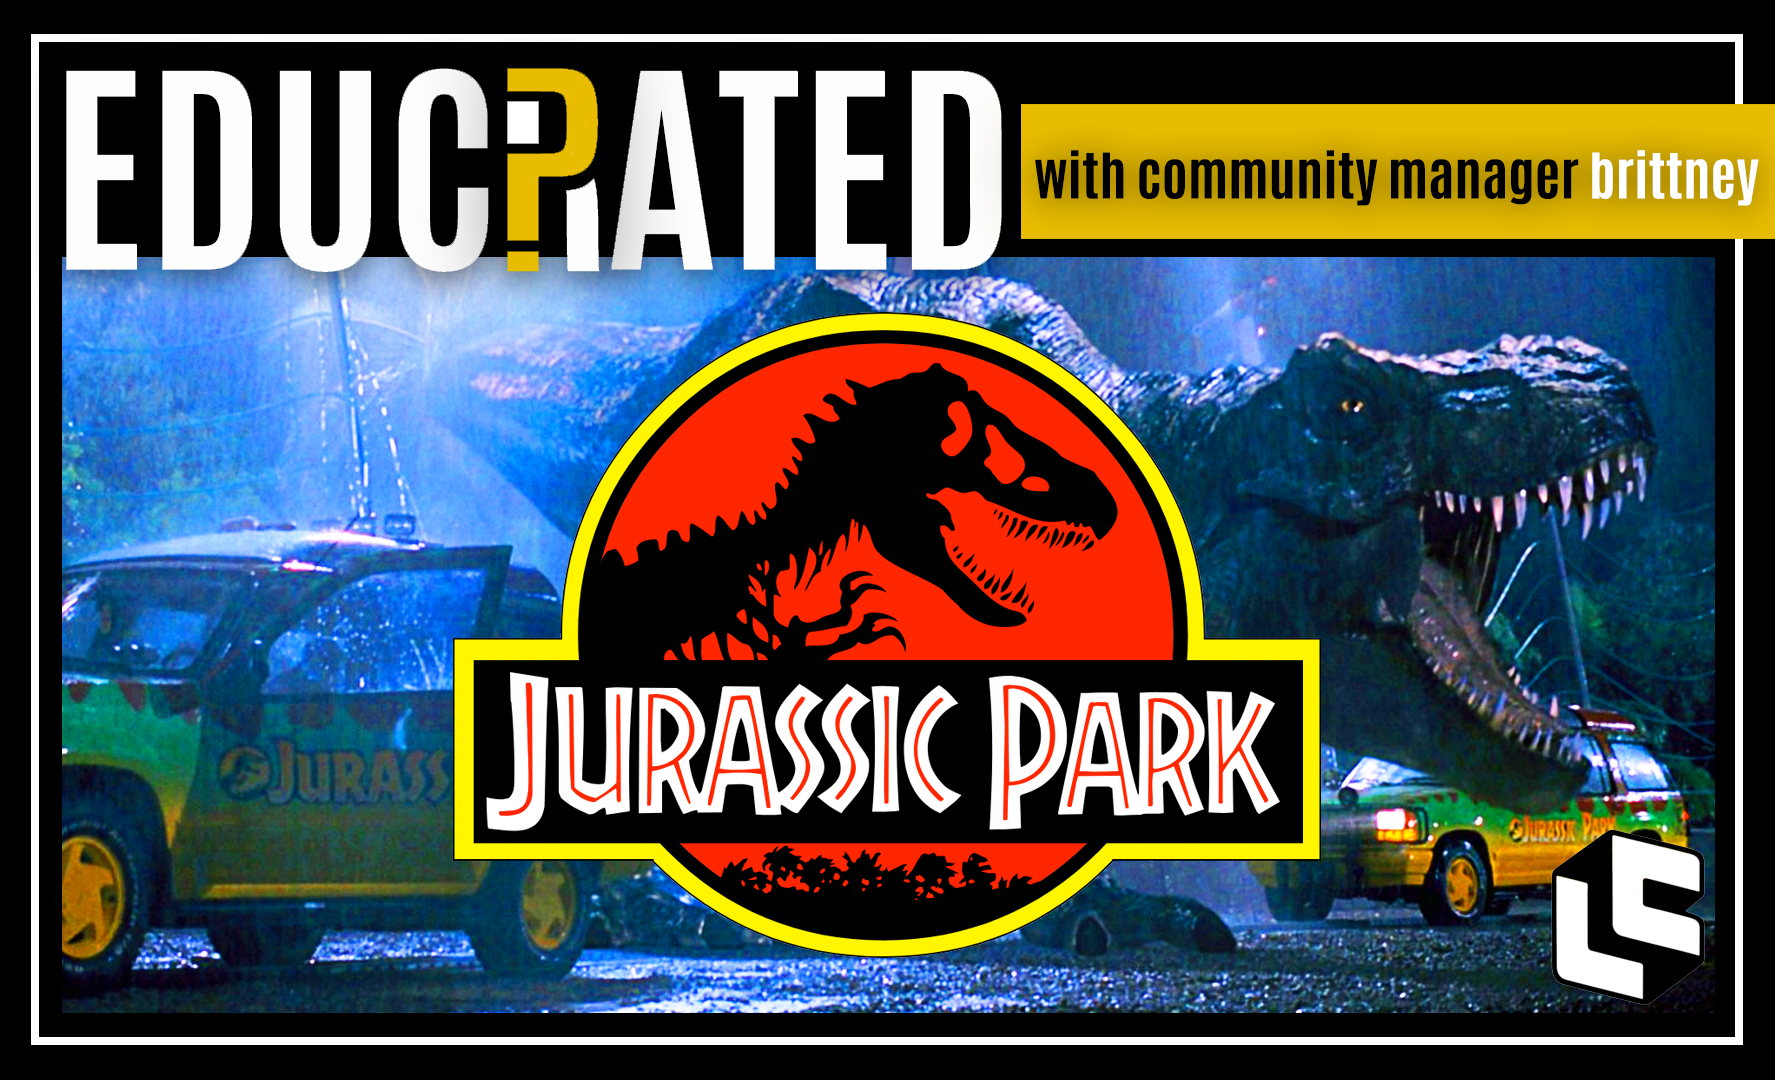 EDUCRATED QUIZ: Jurassic Park Trivia